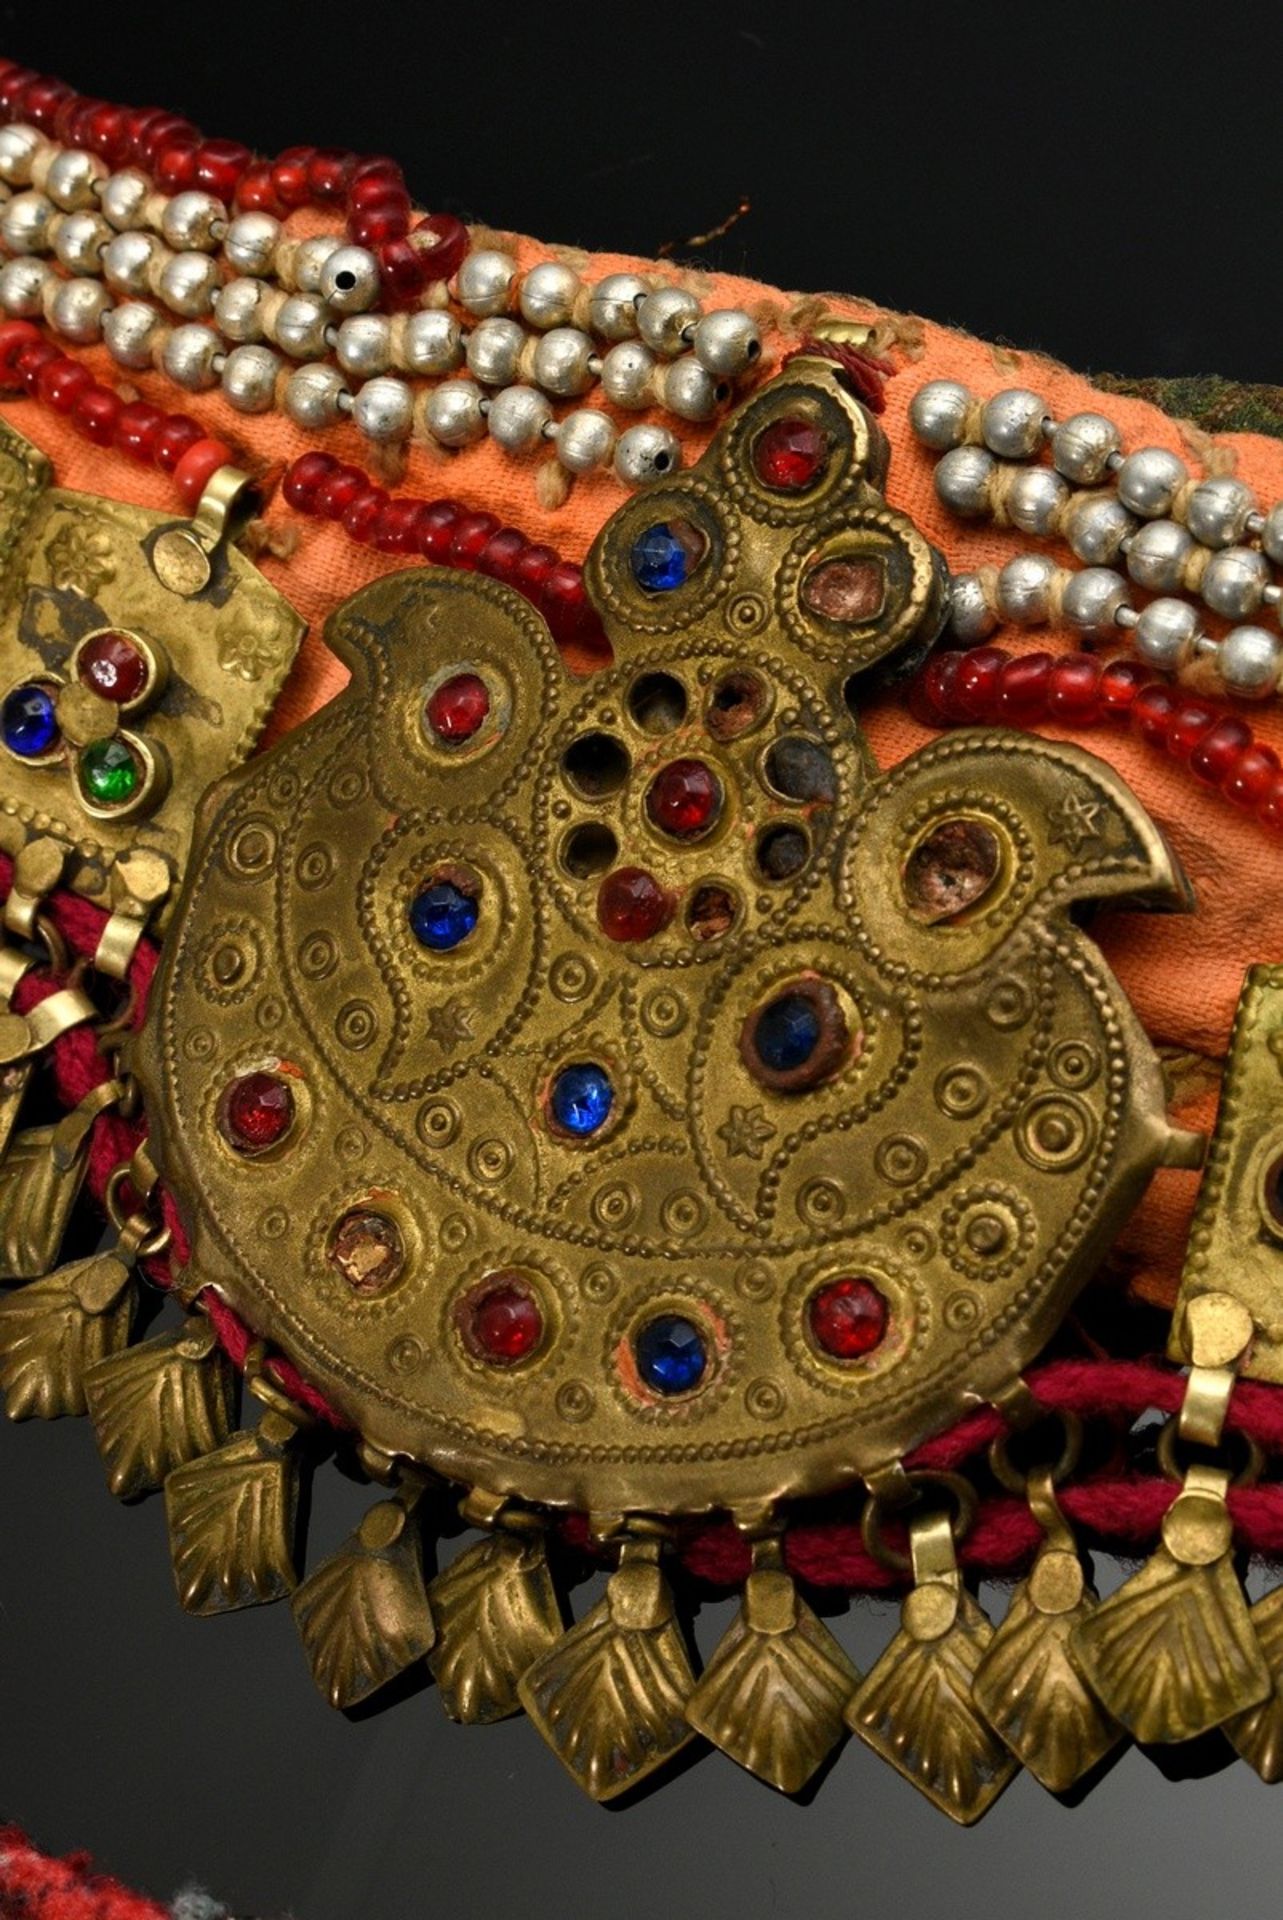 2 Diverse Teile afghanischer Choker und Stirnschmuck mit Glassteinen, Plättchen und Perlen auf Stof - Bild 4 aus 8